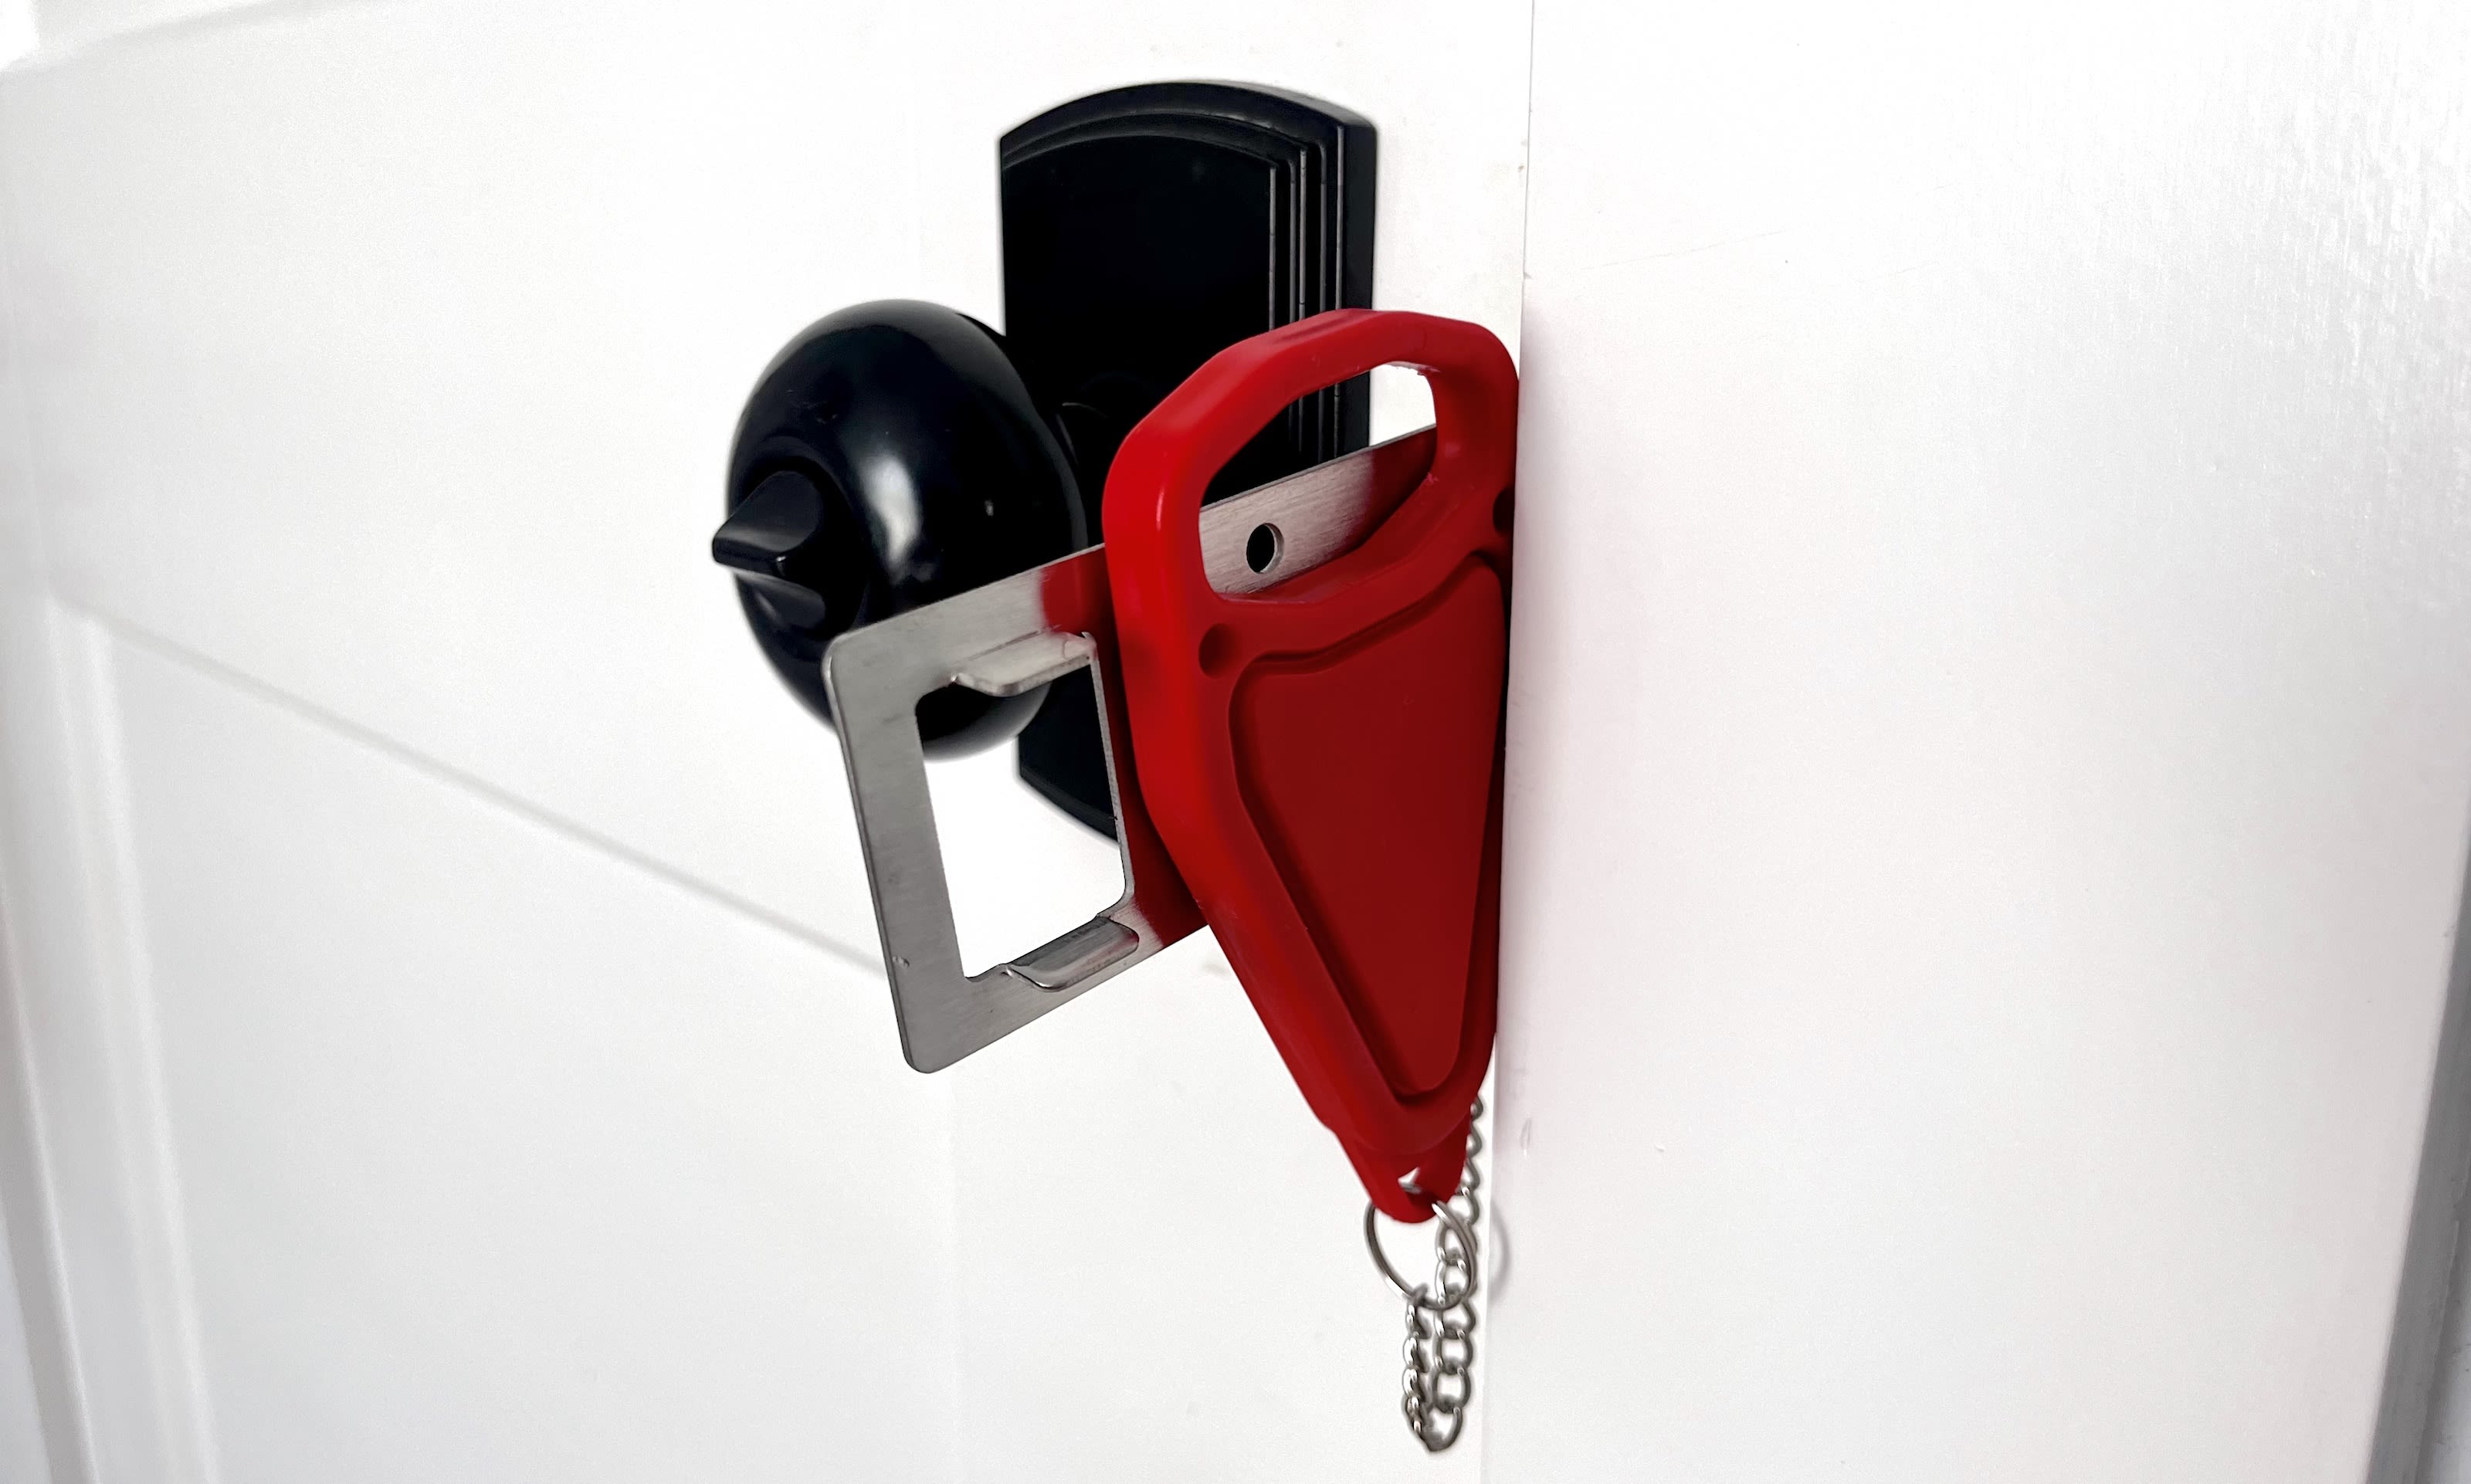 1PC Portable Door Locks Home Security Door Lockers Travel Lock